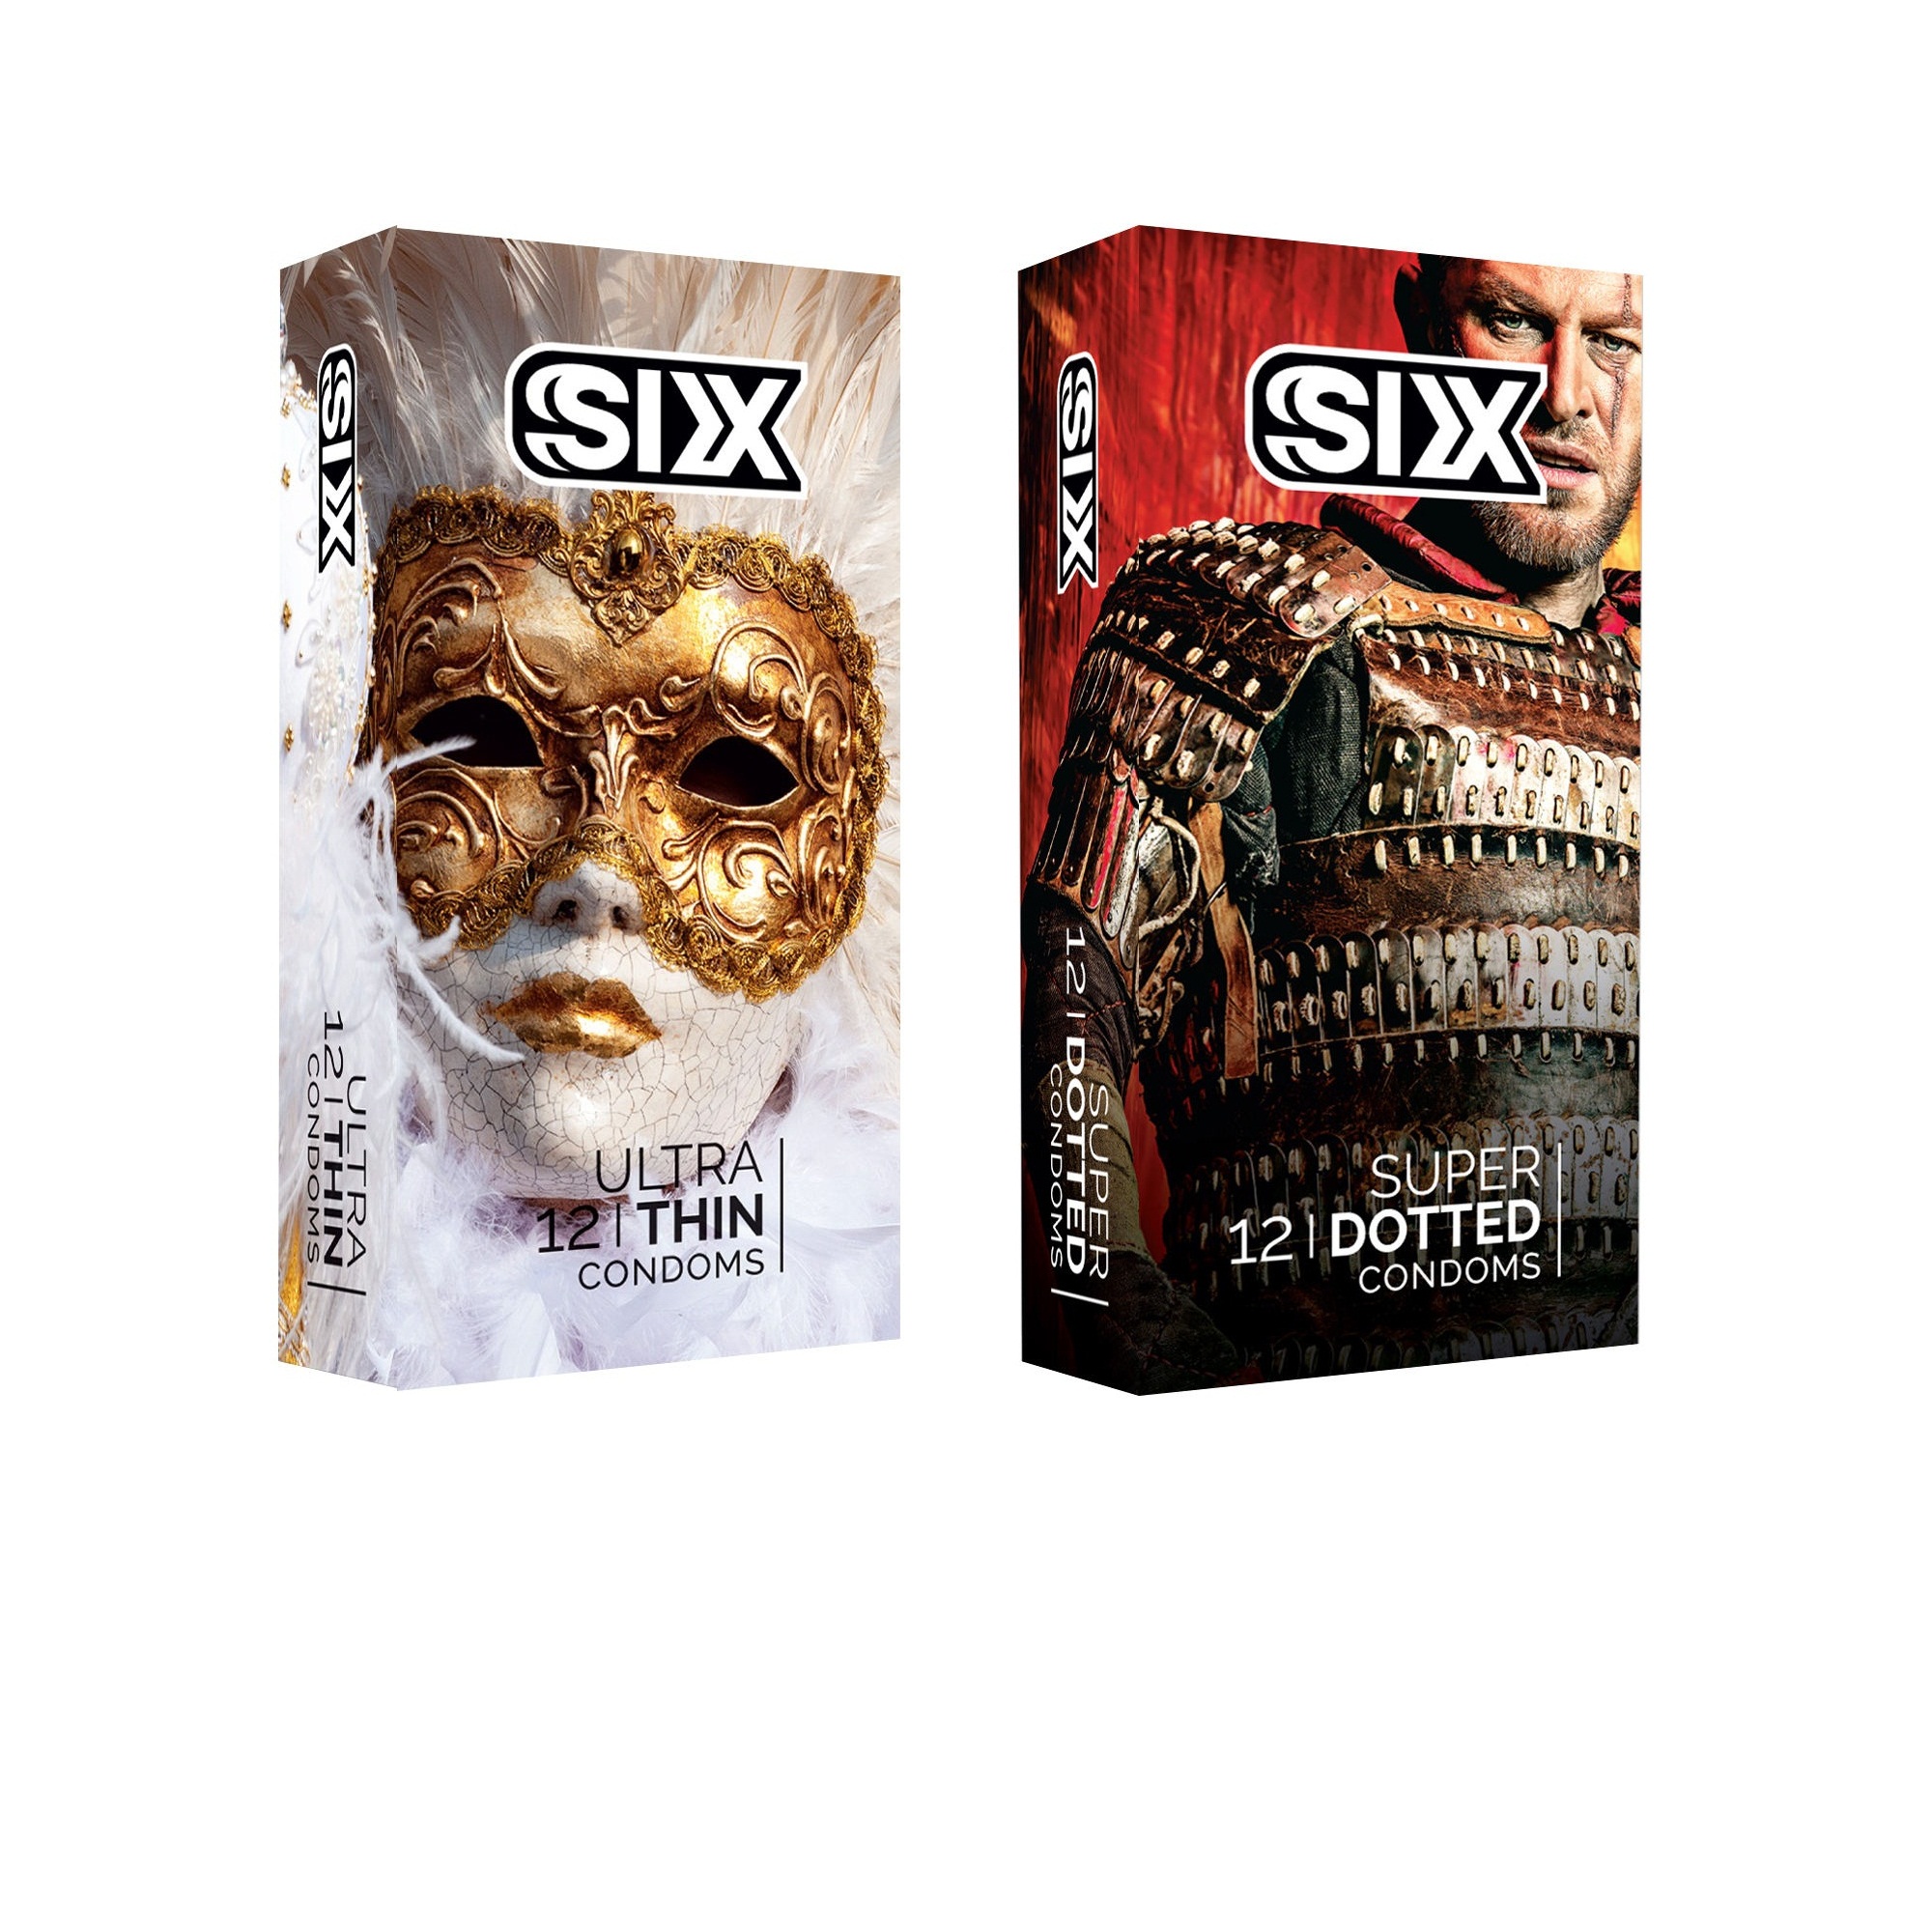 کاندوم سیکس مدل Ultra Thin بسته 12 عددی به همراه کاندوم سیکس مدل superdotted بسته 12 عدد -  - 2